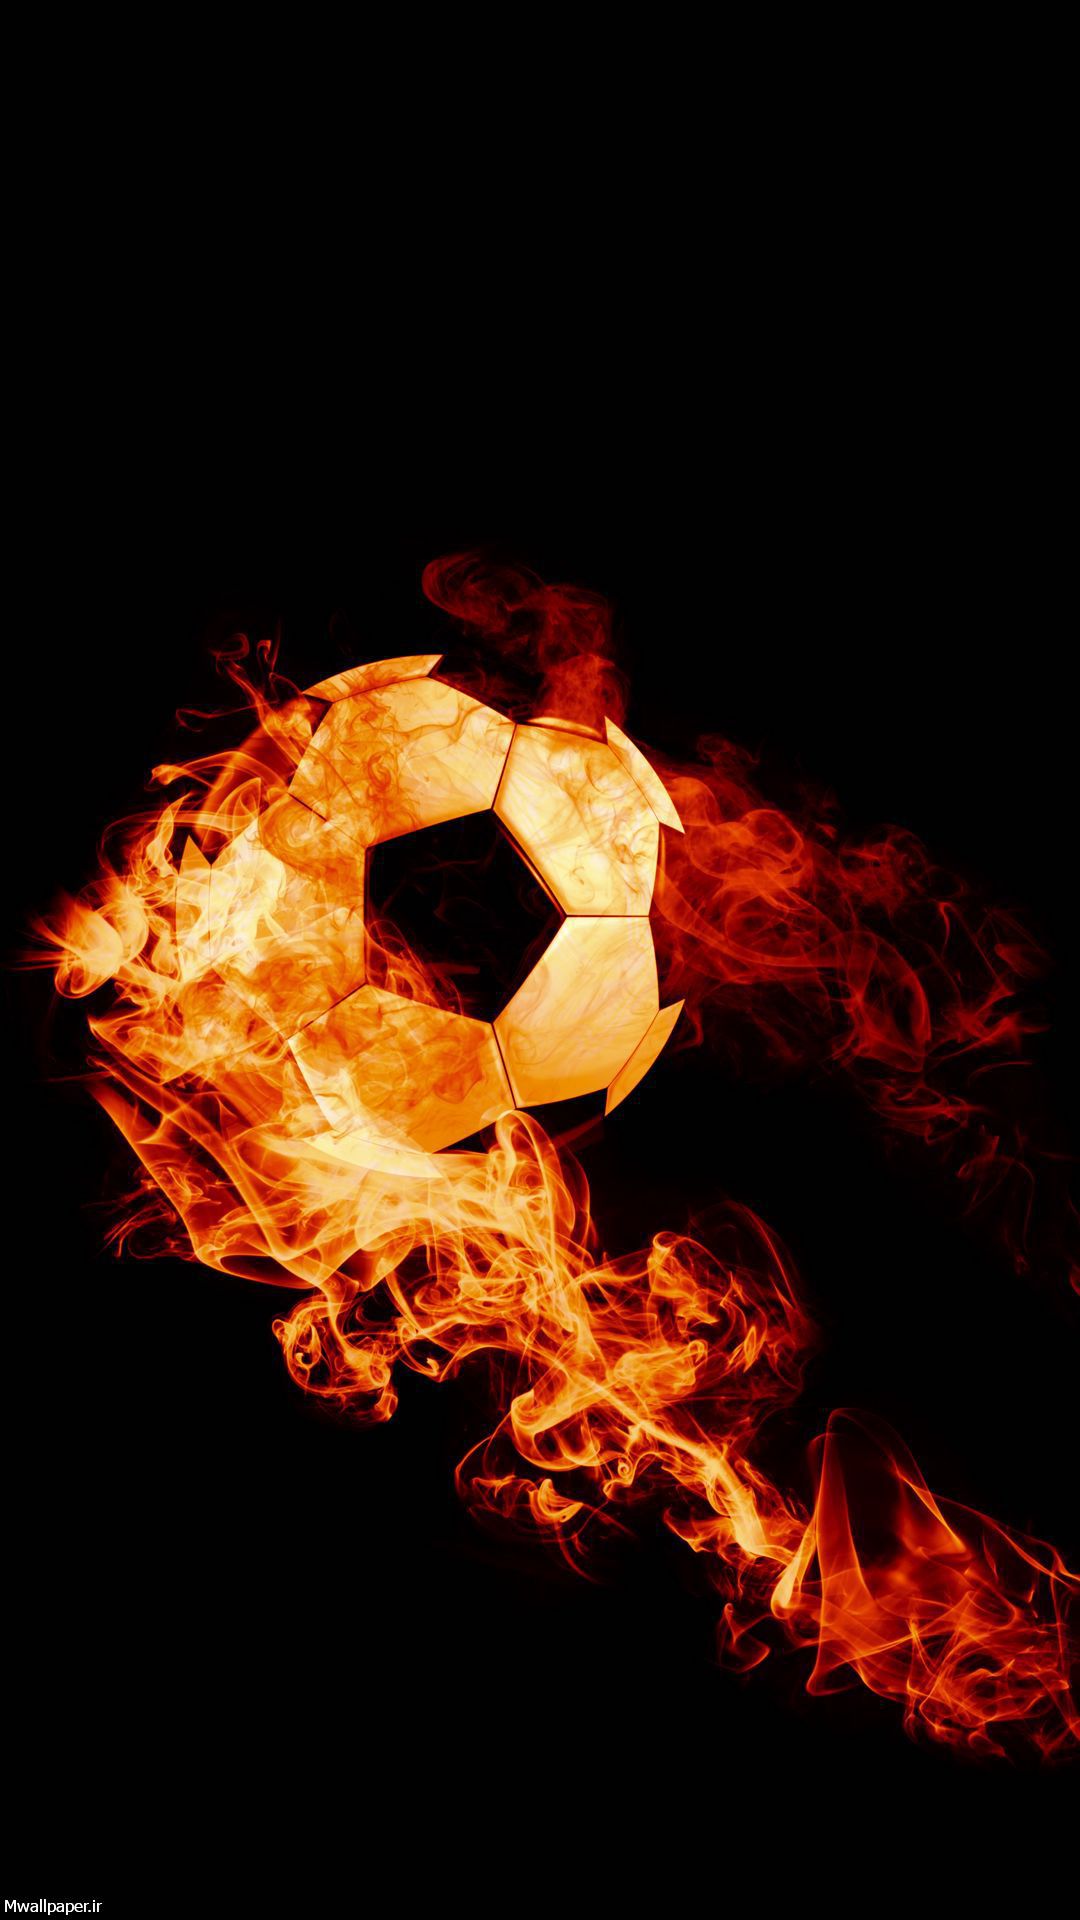 بک گراند توپ فوتبال در آتش